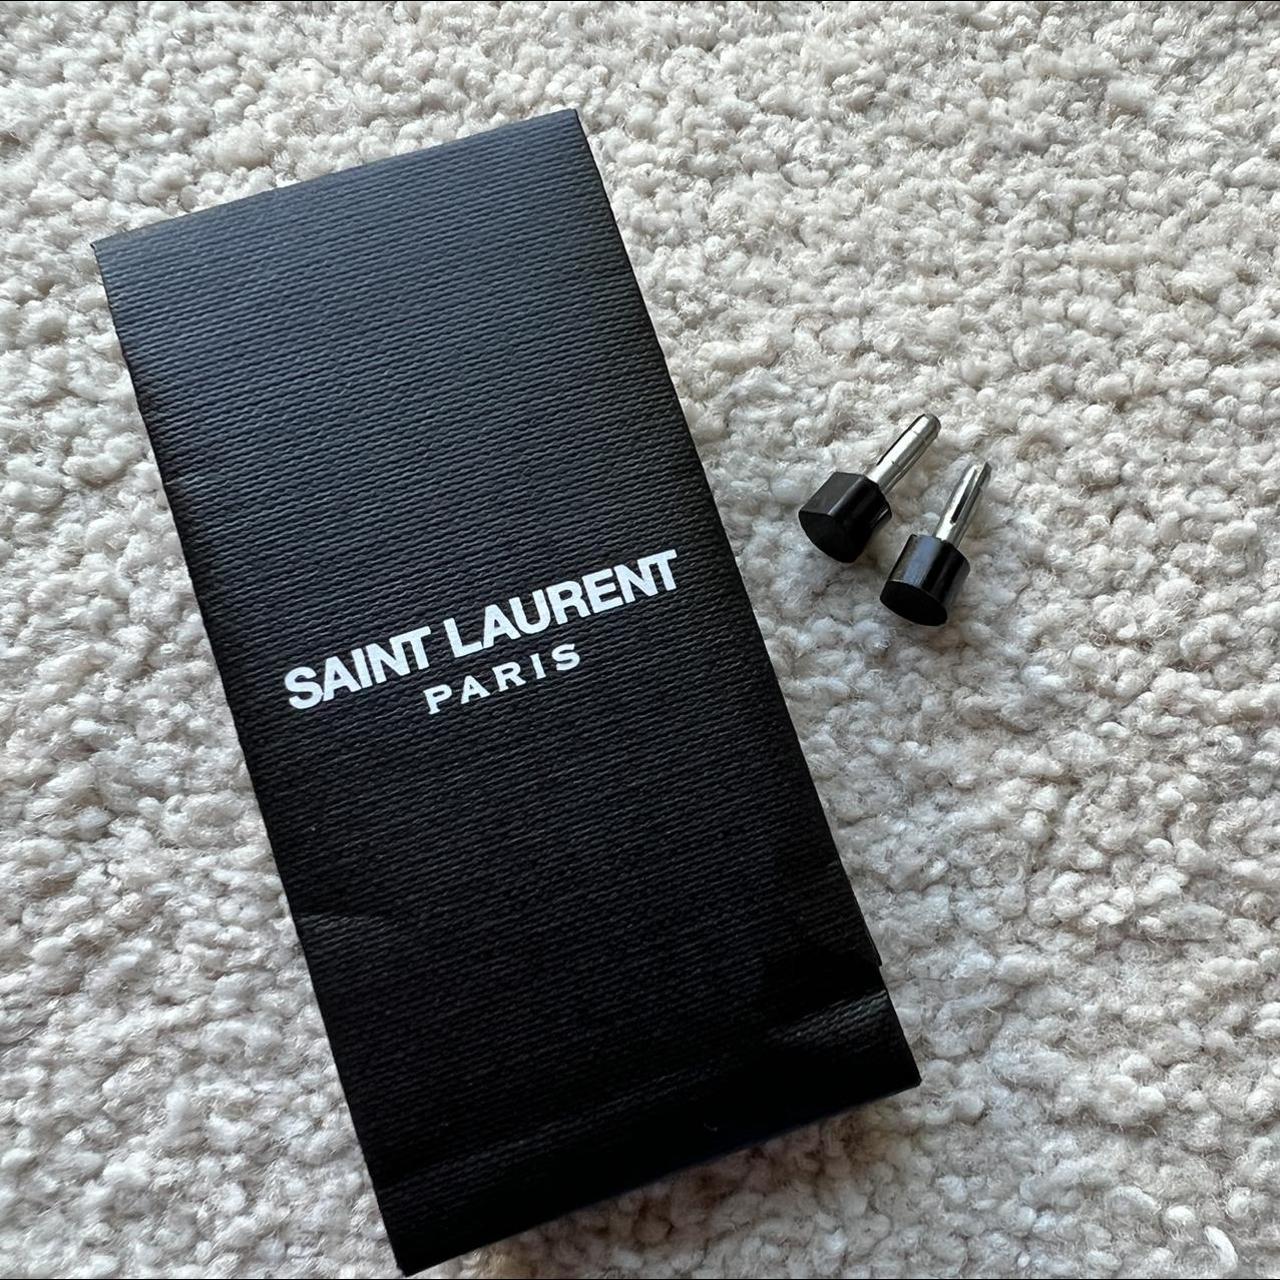 Saint Laurent Paris YSL Black leather - Depop